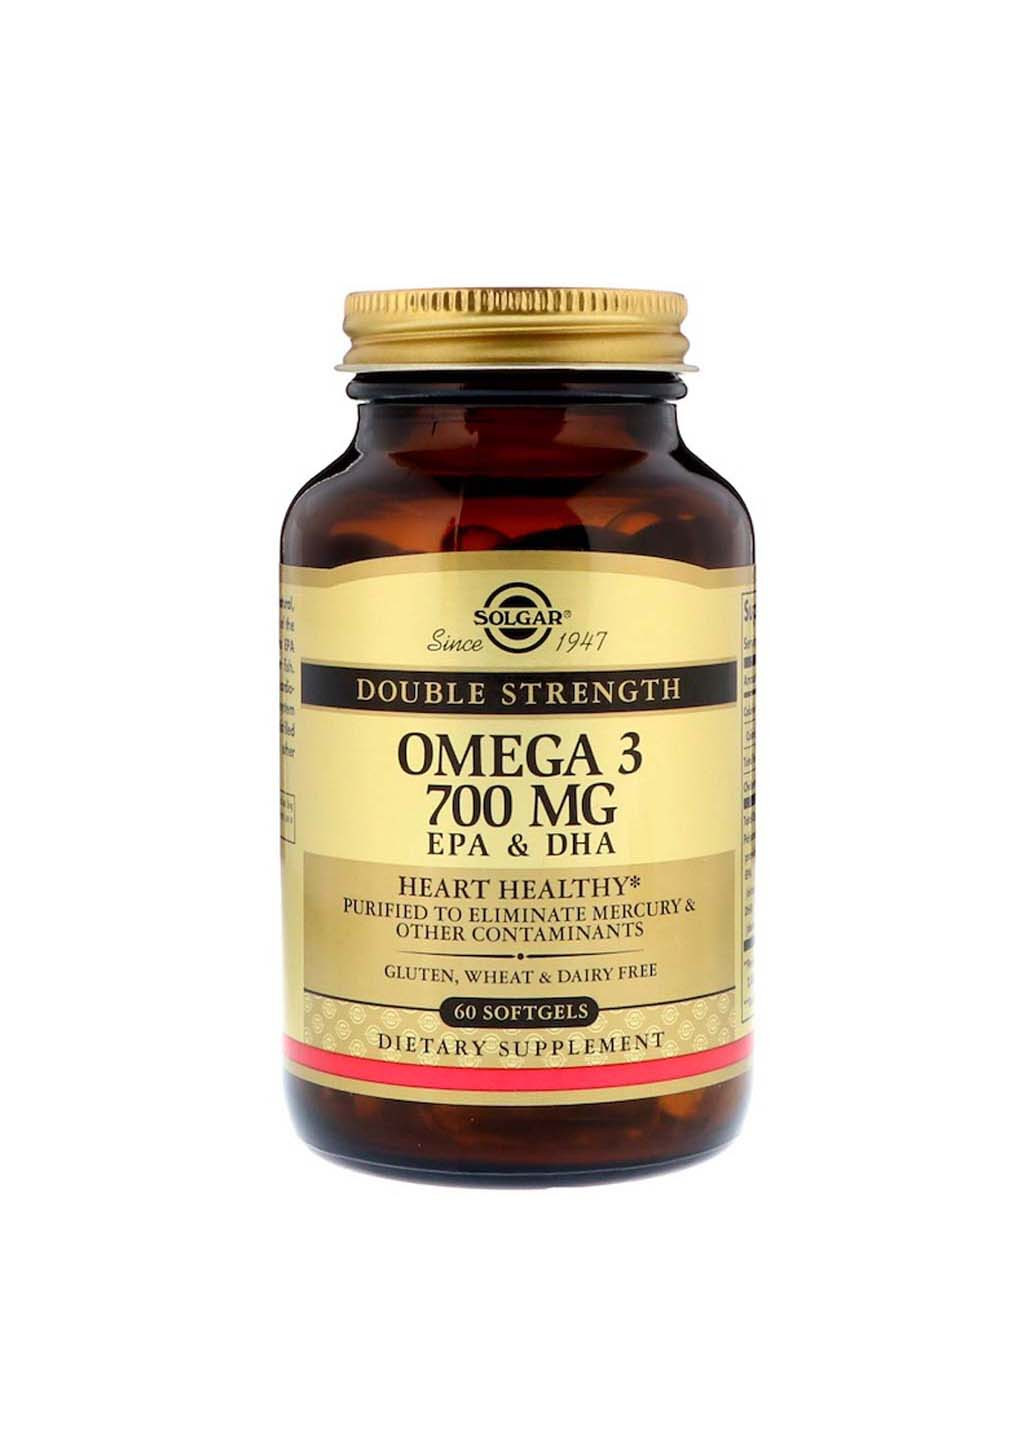 Omega-3 EPA DHA двойная сила 700 мг 60 гелевых капсул Solgar (260008232)